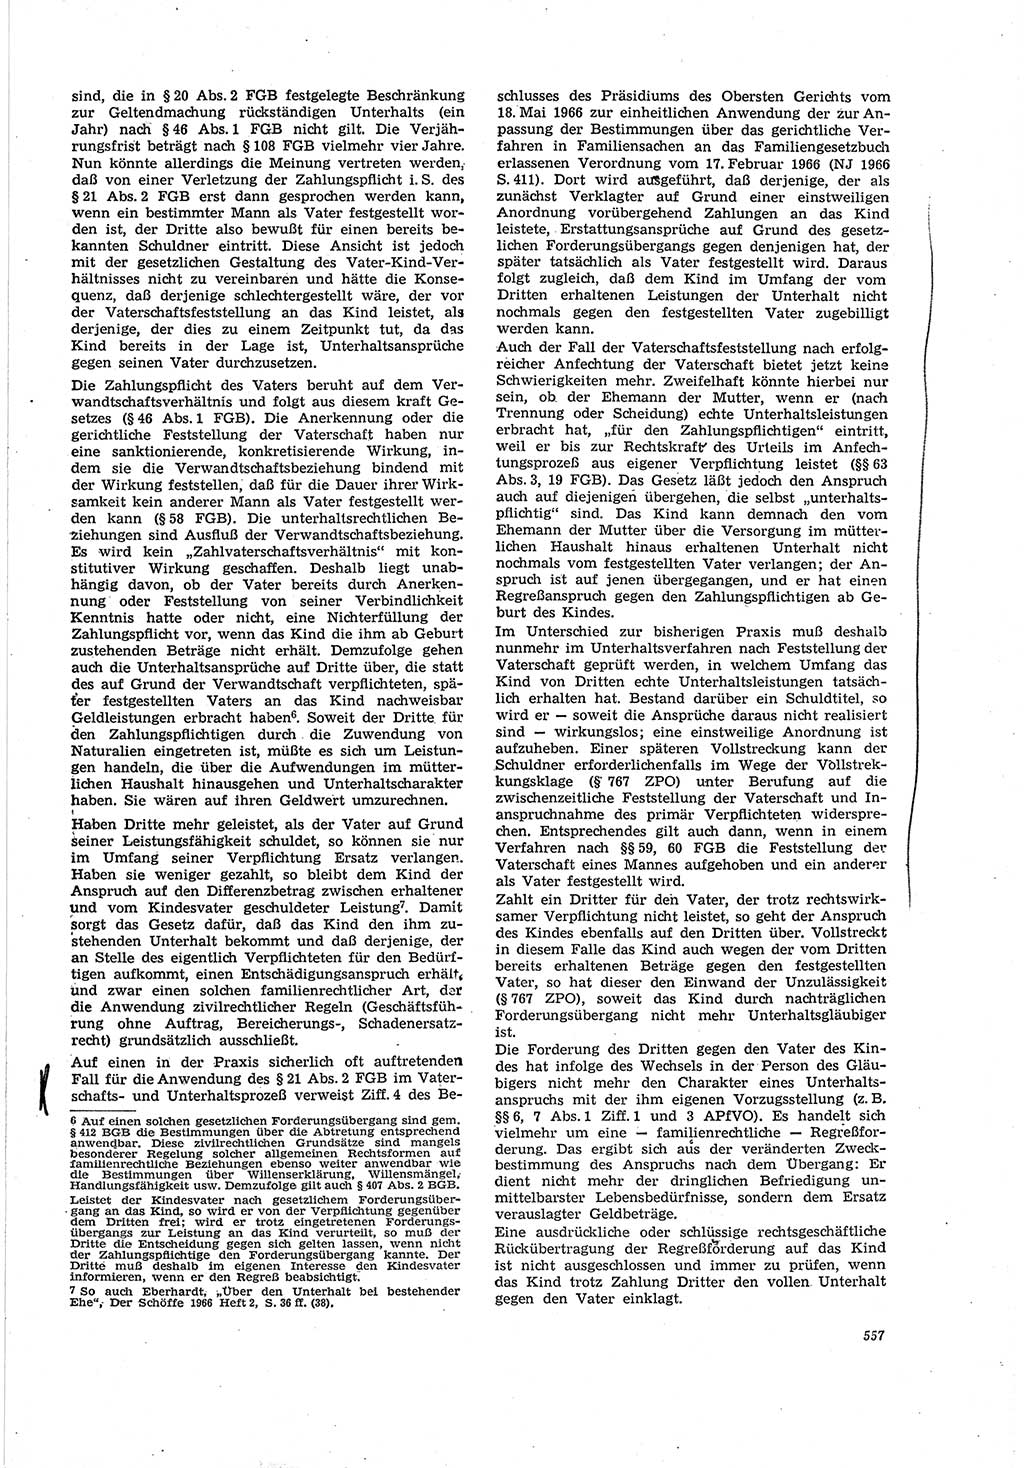 Neue Justiz (NJ), Zeitschrift für Recht und Rechtswissenschaft [Deutsche Demokratische Republik (DDR)], 20. Jahrgang 1966, Seite 557 (NJ DDR 1966, S. 557)